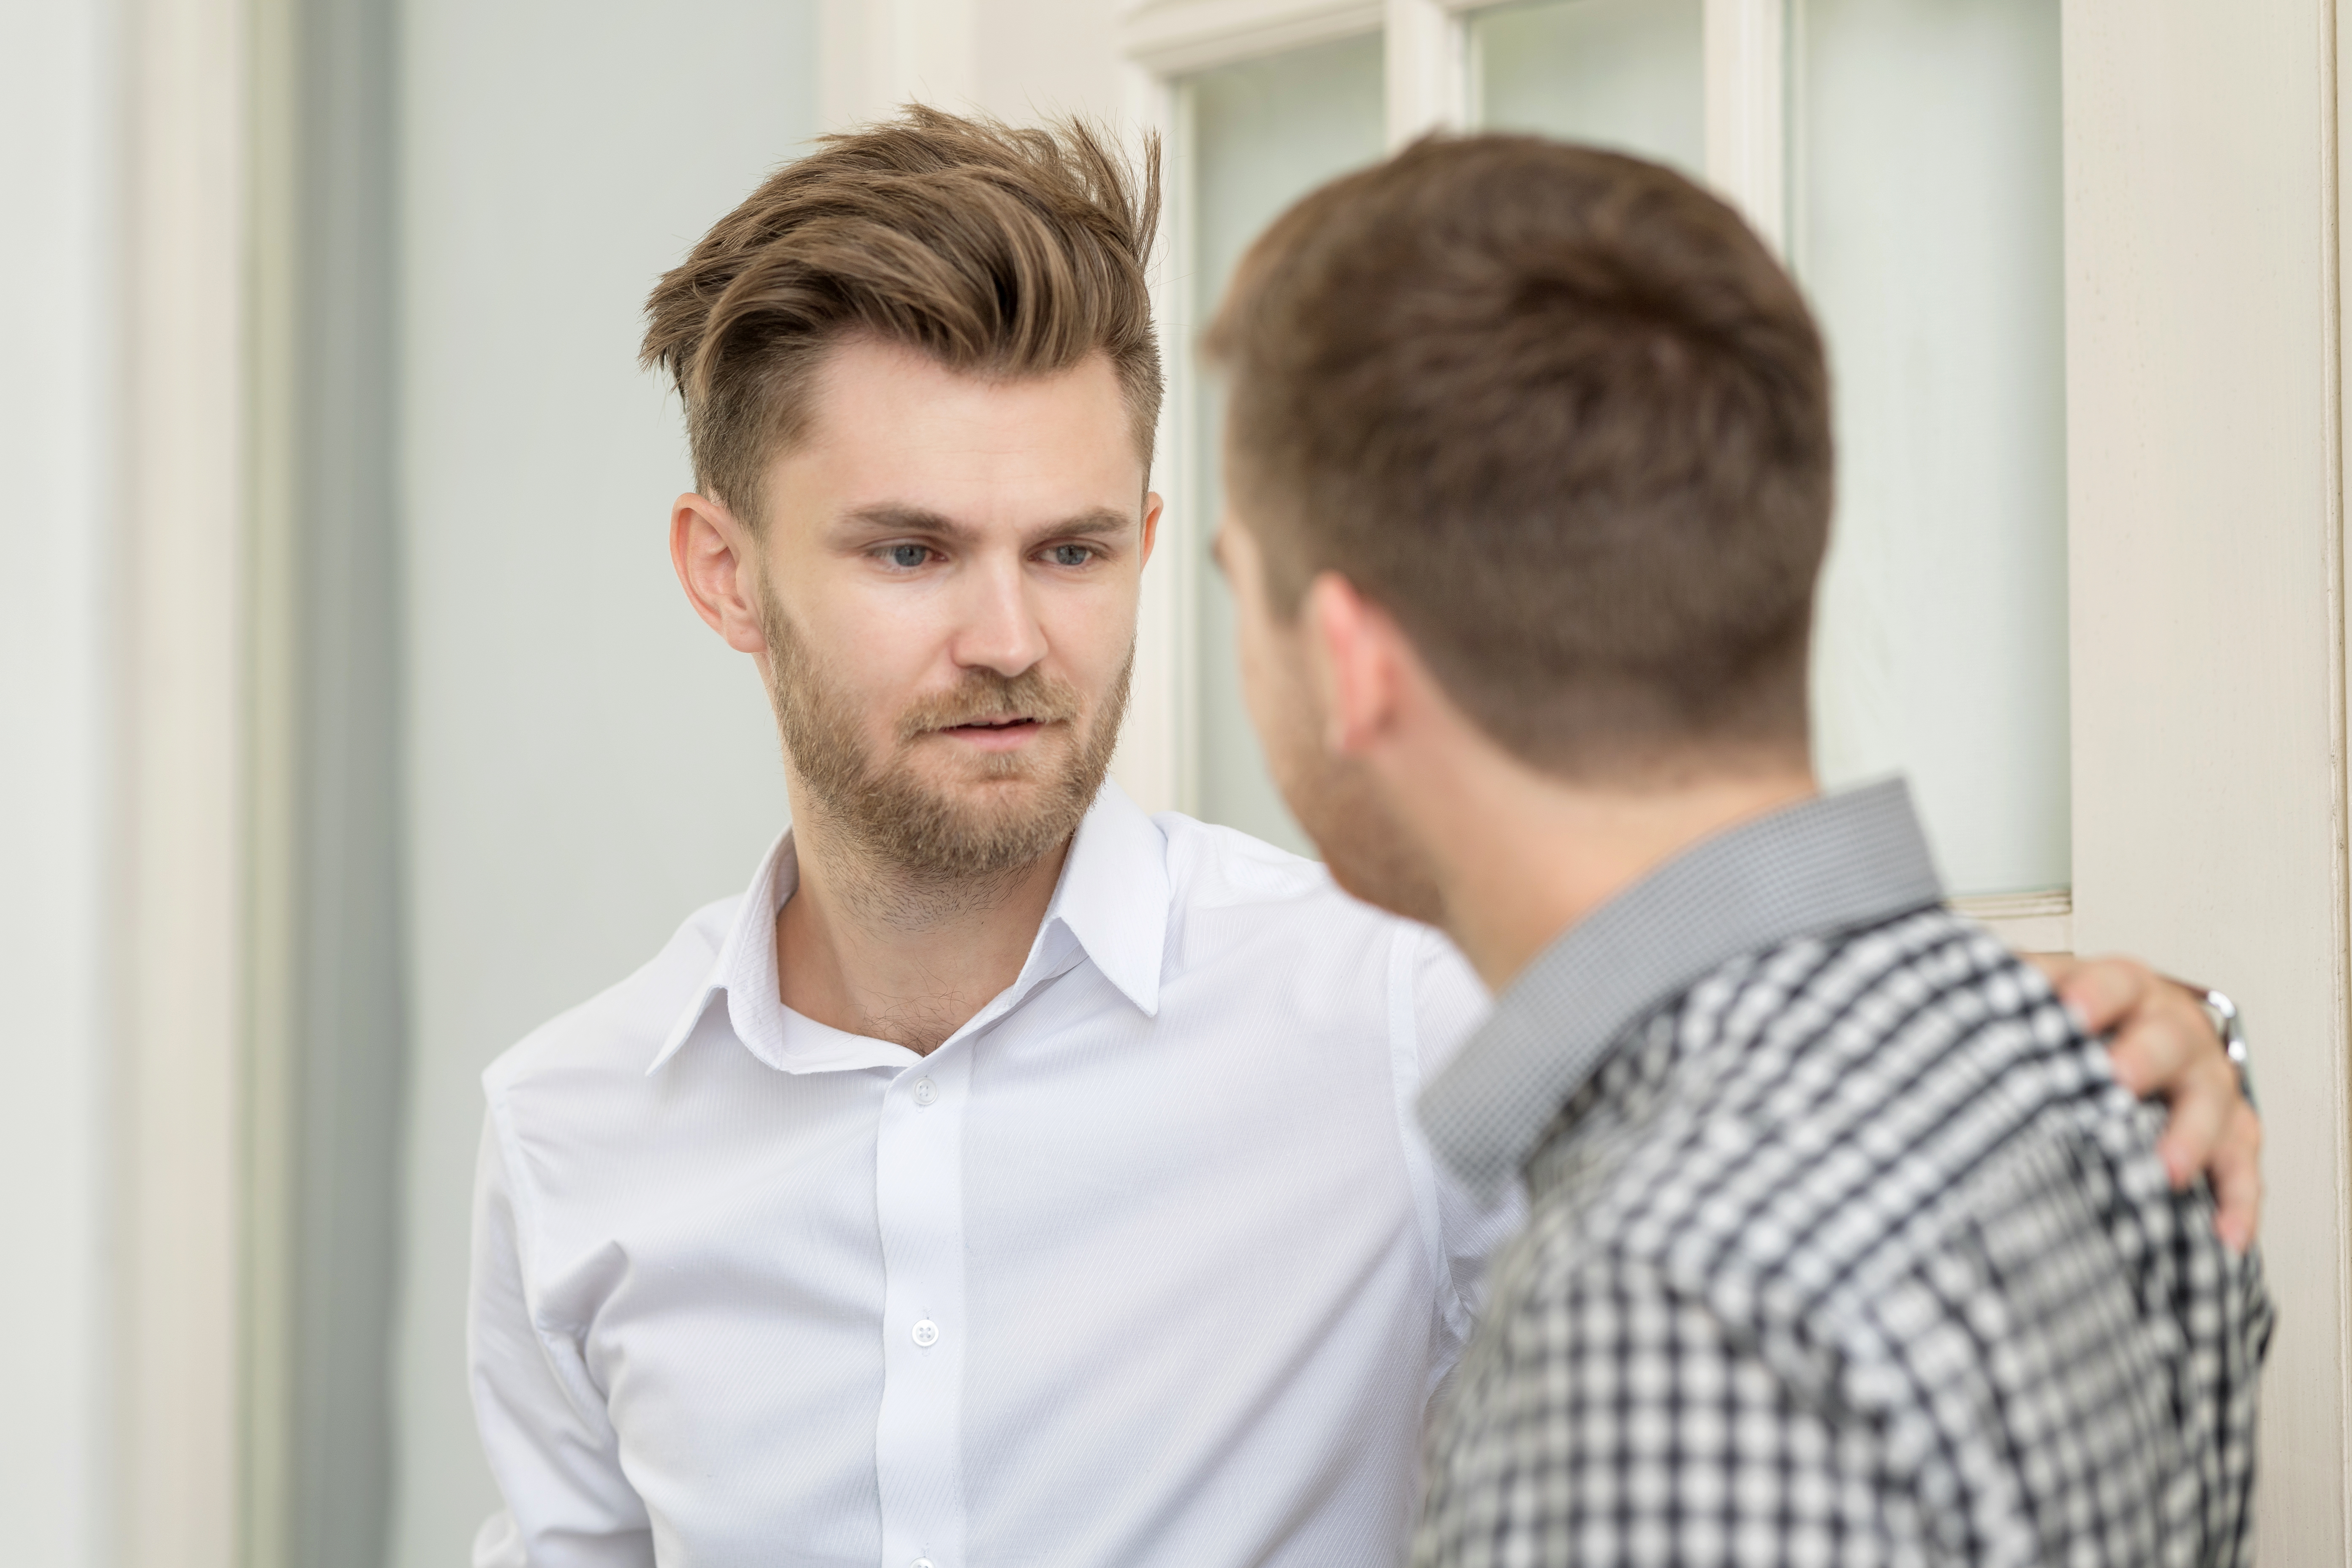 Zwei junge Männer führen ein ernstes Gespräch | Quelle: Shutterstock